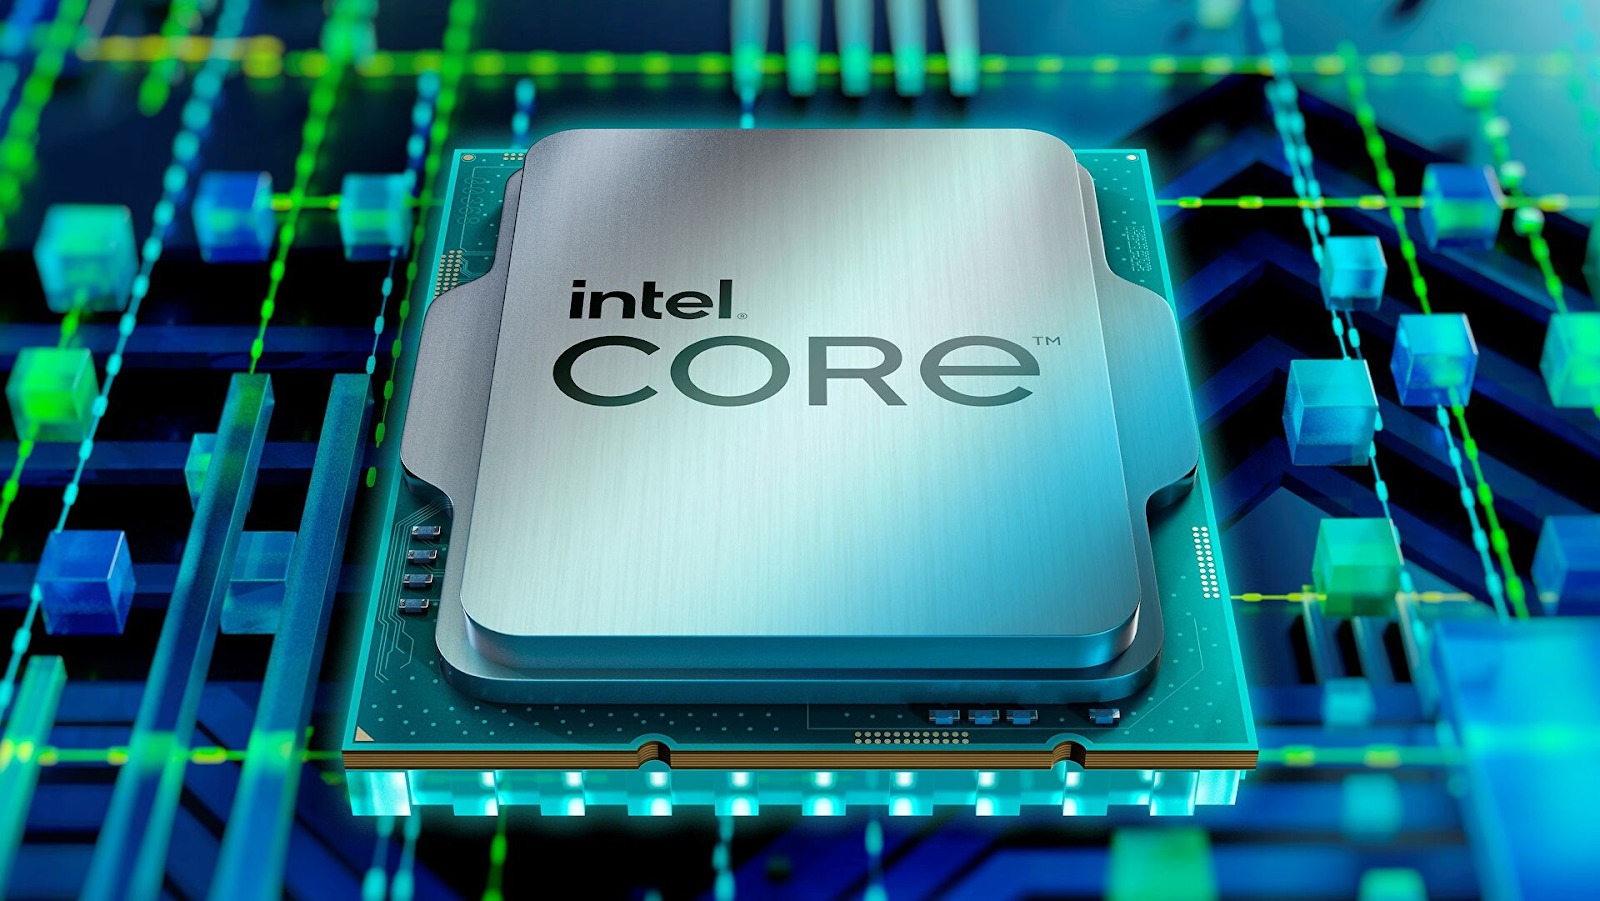 Intel Core i9-13900K có thể đạt ngưỡng nhiệt độ 100°C khi hoạt động